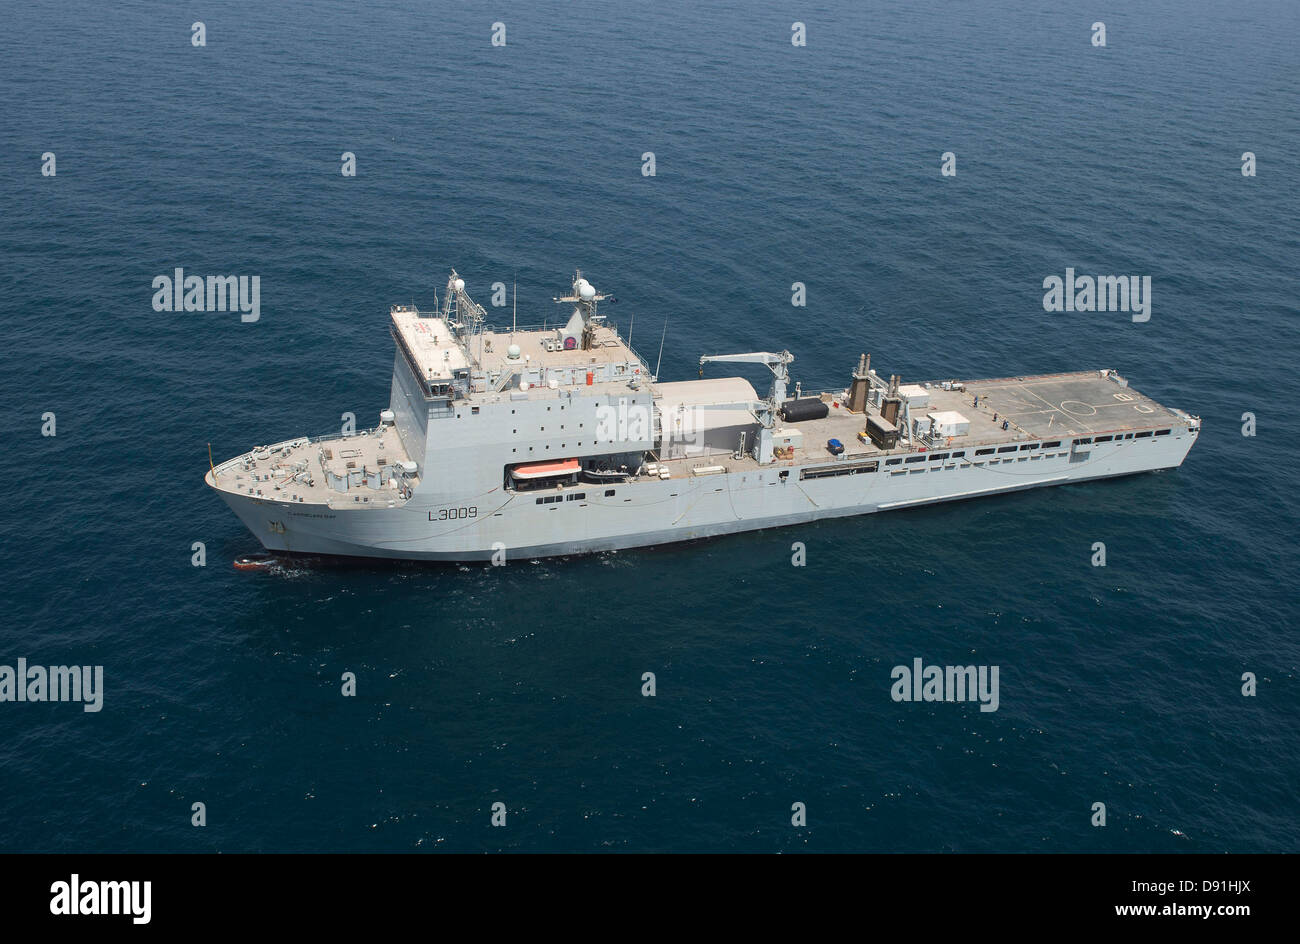 Die britische Royal Navy Flotte Hilfs Landung Dock Schiff RFA Cardigan Bay Manöver in eine Position bei einer internationalen Mine Gegenmaßnahmen Übung 20. Mai 2013 in den Persischen Golf. Stockfoto